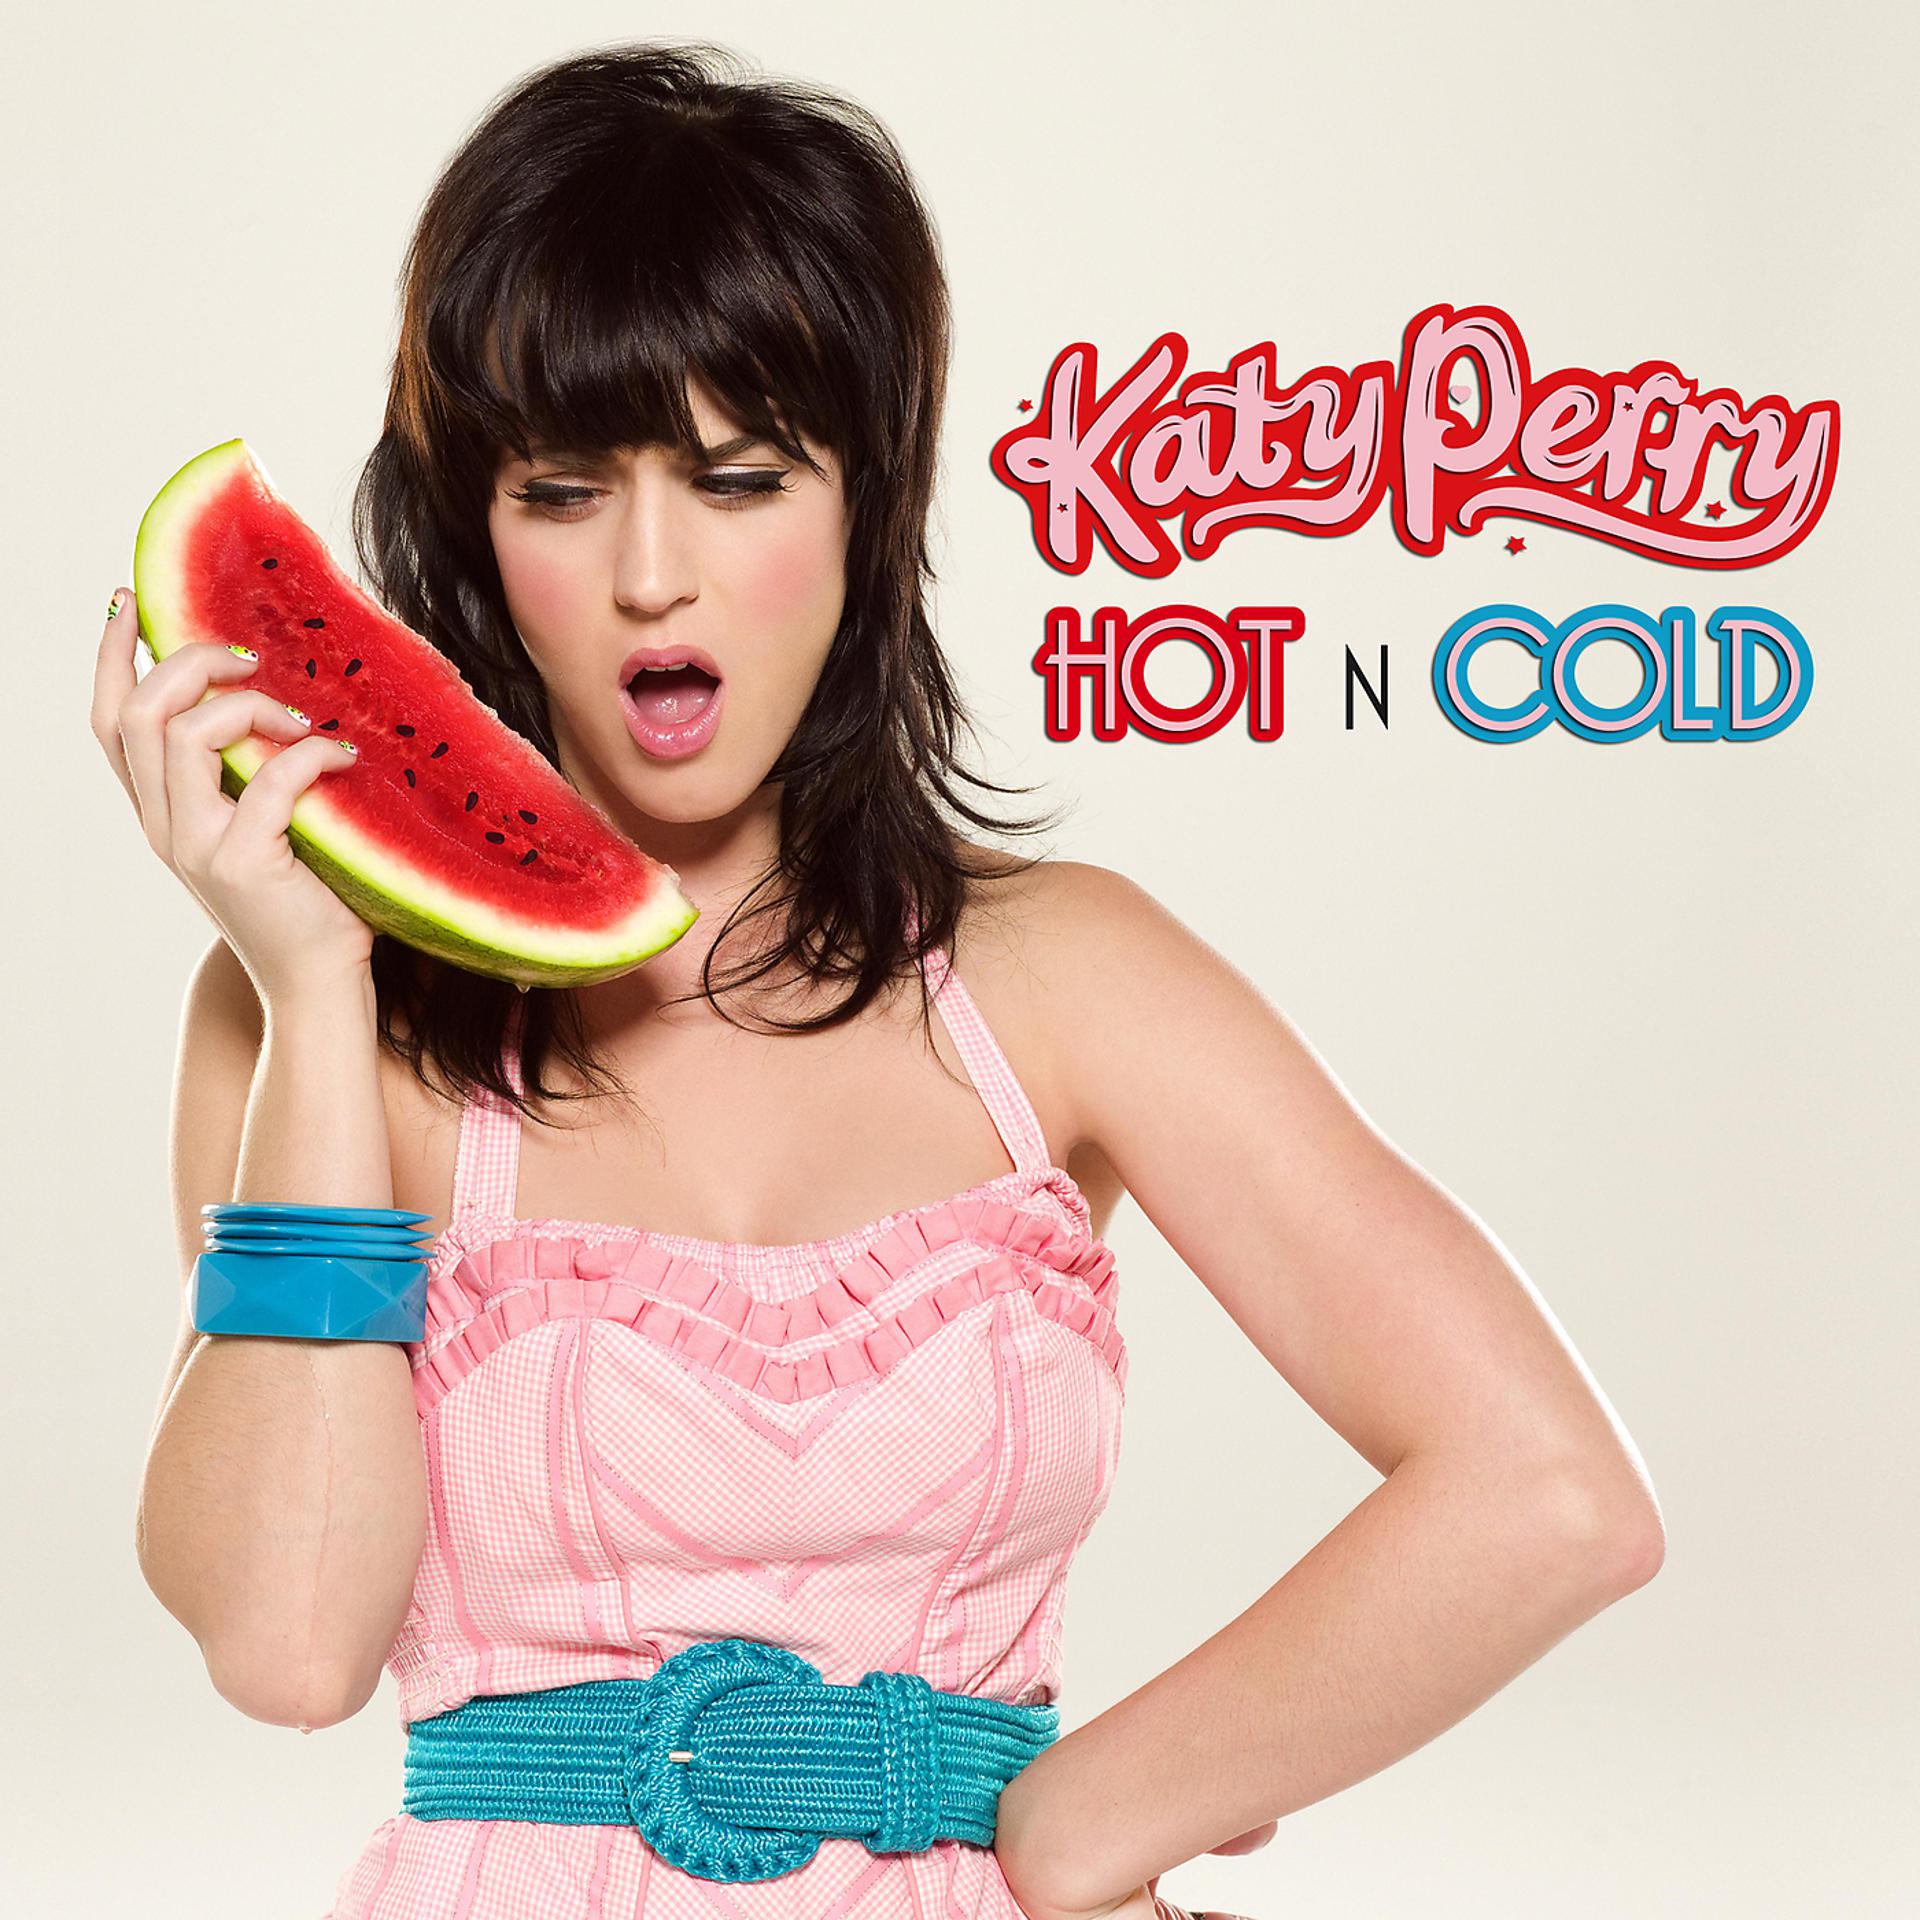 Hot n Cold Кэти Перри. Katy Perry hot n Cold обложка. Кэти Перри 2008. Katy Perry обложка hot. Хот энд колд